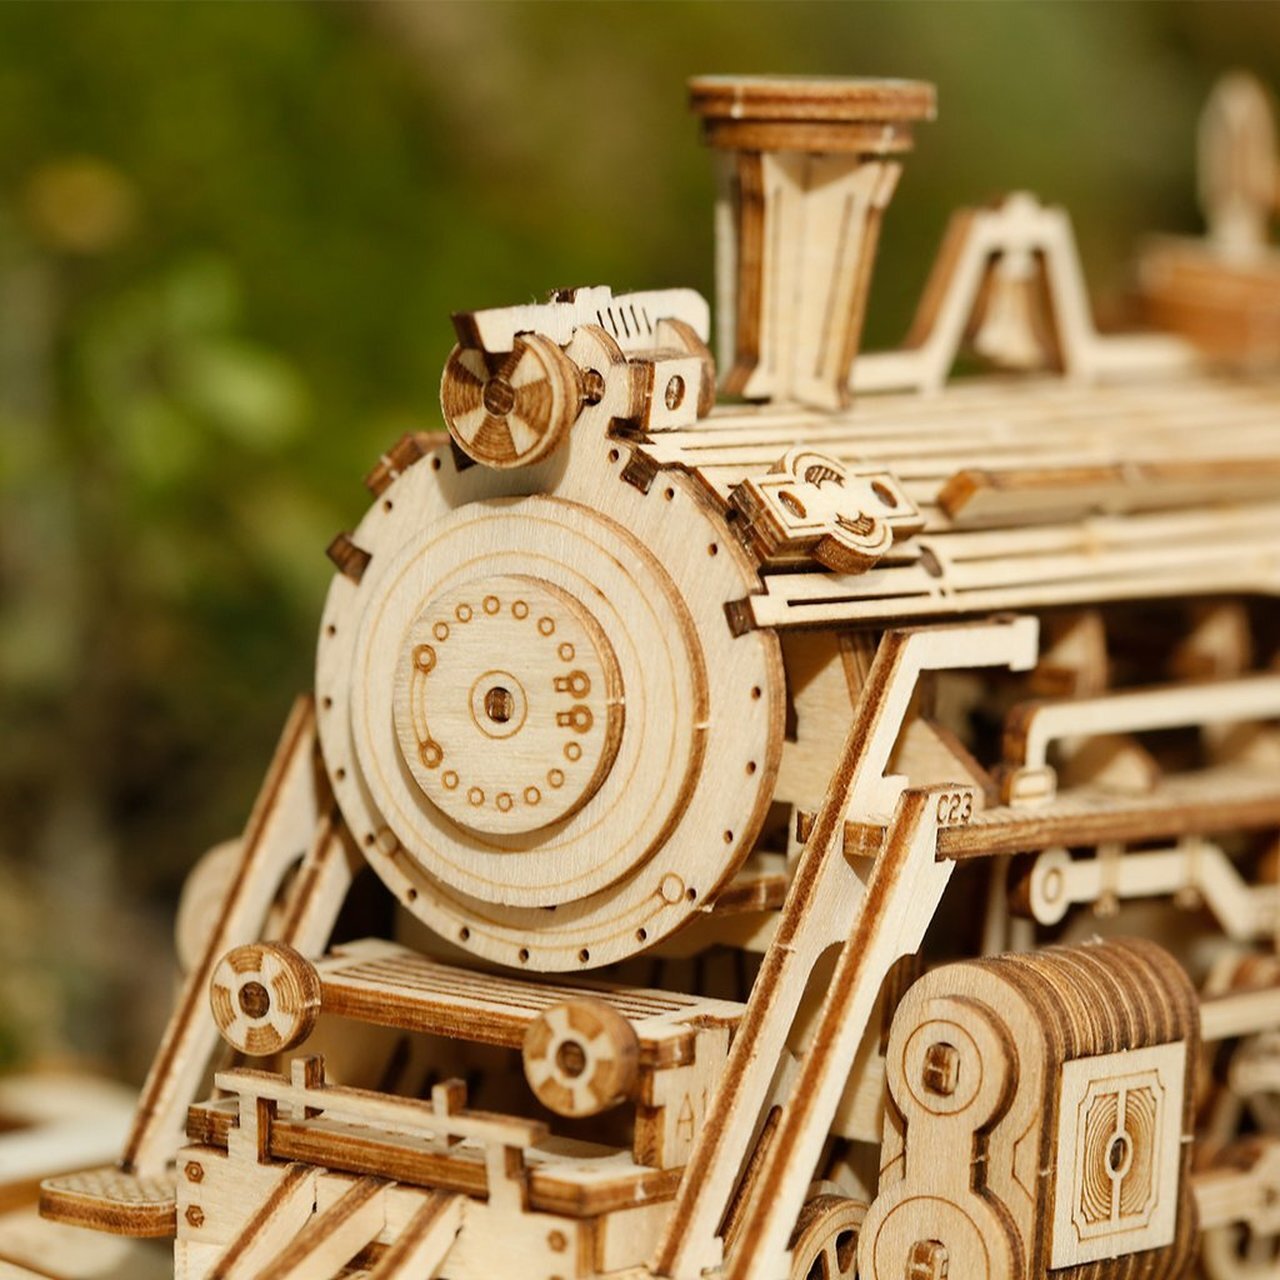 Locomotive Puzzle 3D 1:80